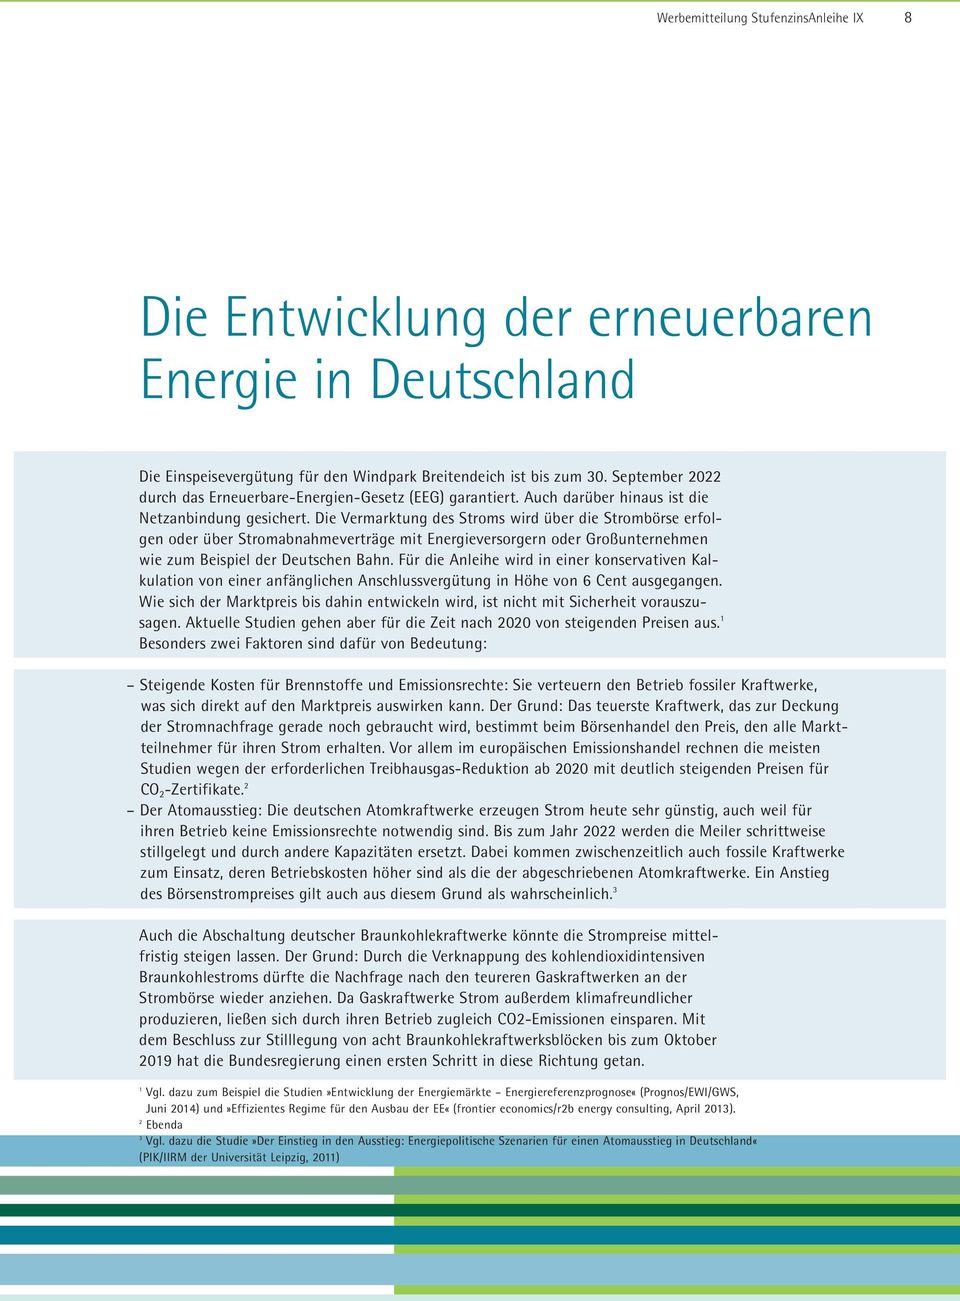 Die Vermarktung des Stroms wird über die Strombörse erfolgen oder über Stromabnahmeverträge mit Energieversorgern oder Großunternehmen wie zum Beispiel der Deutschen Bahn.